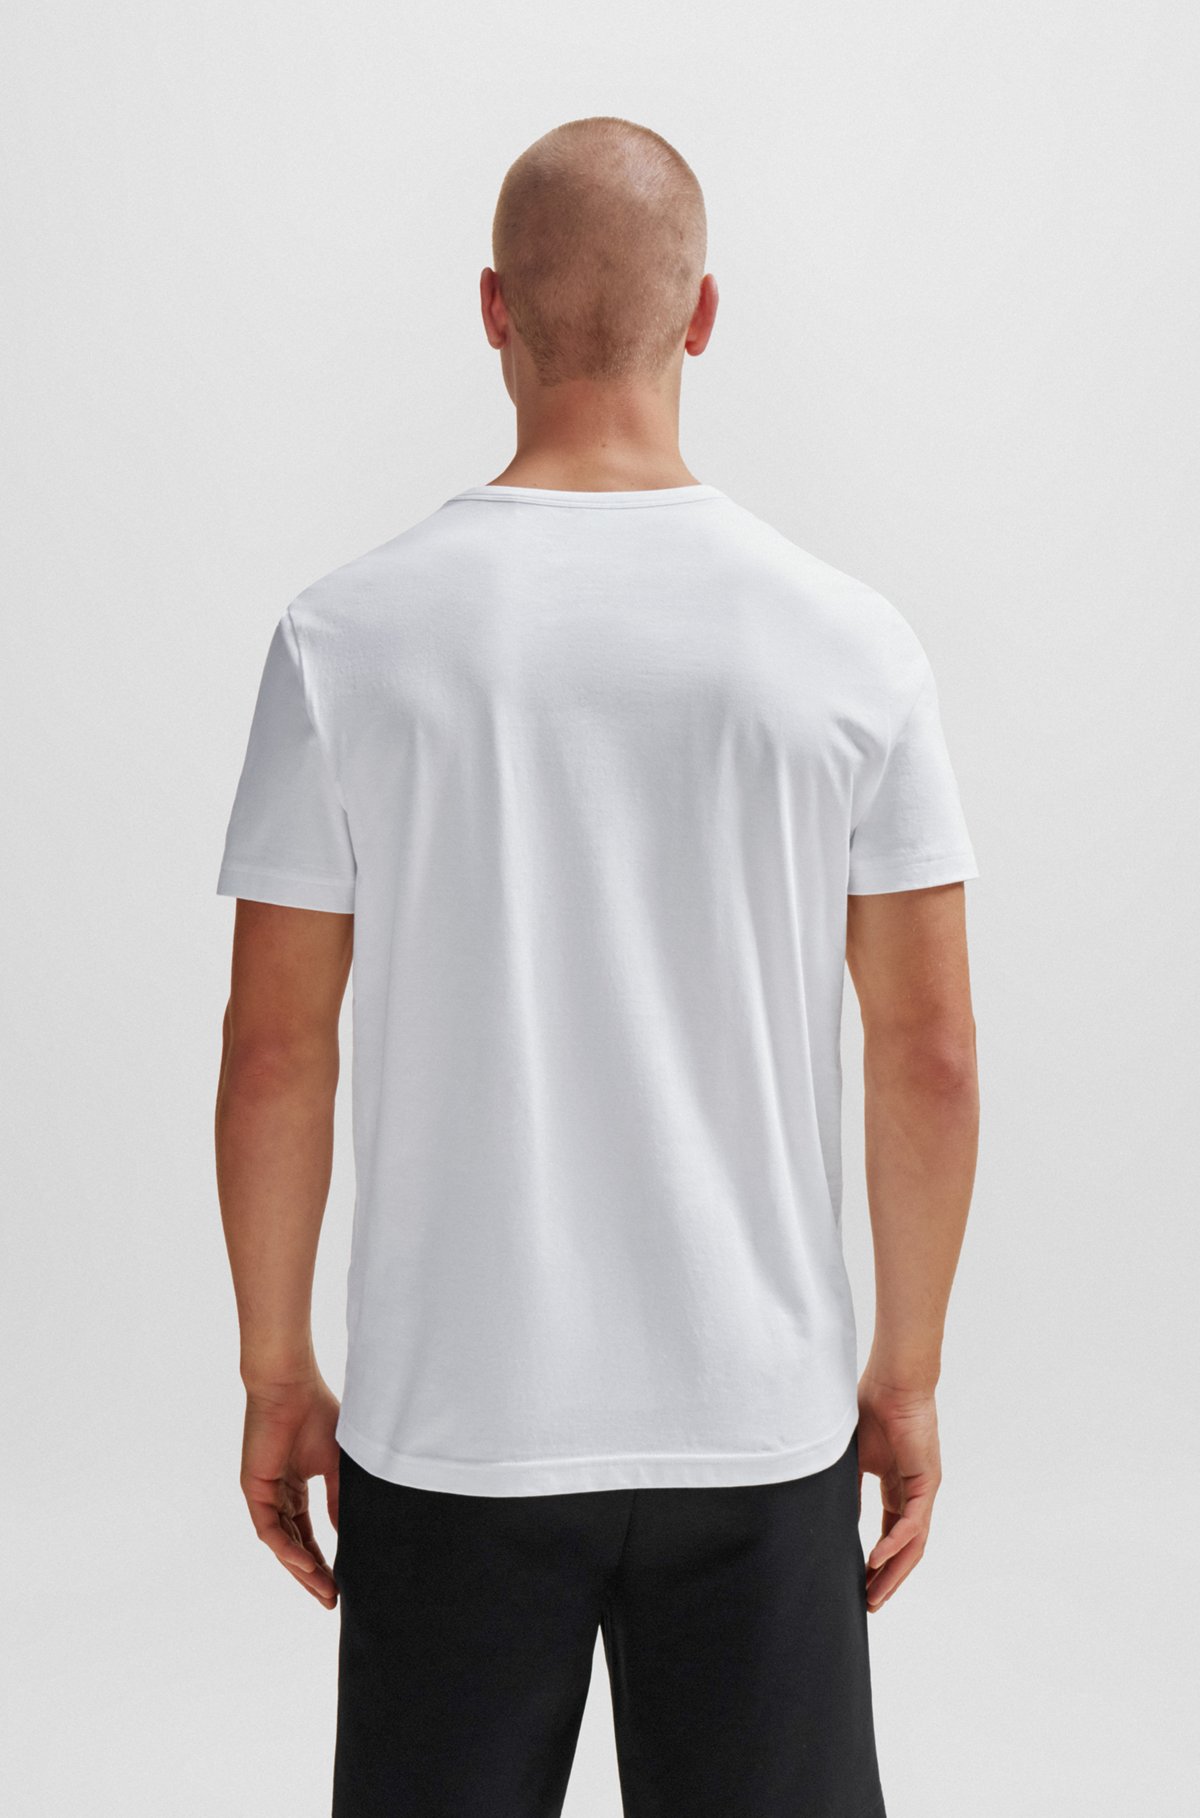 クルーネックTシャツ オーガニックコットン カーブロゴ, ホワイト